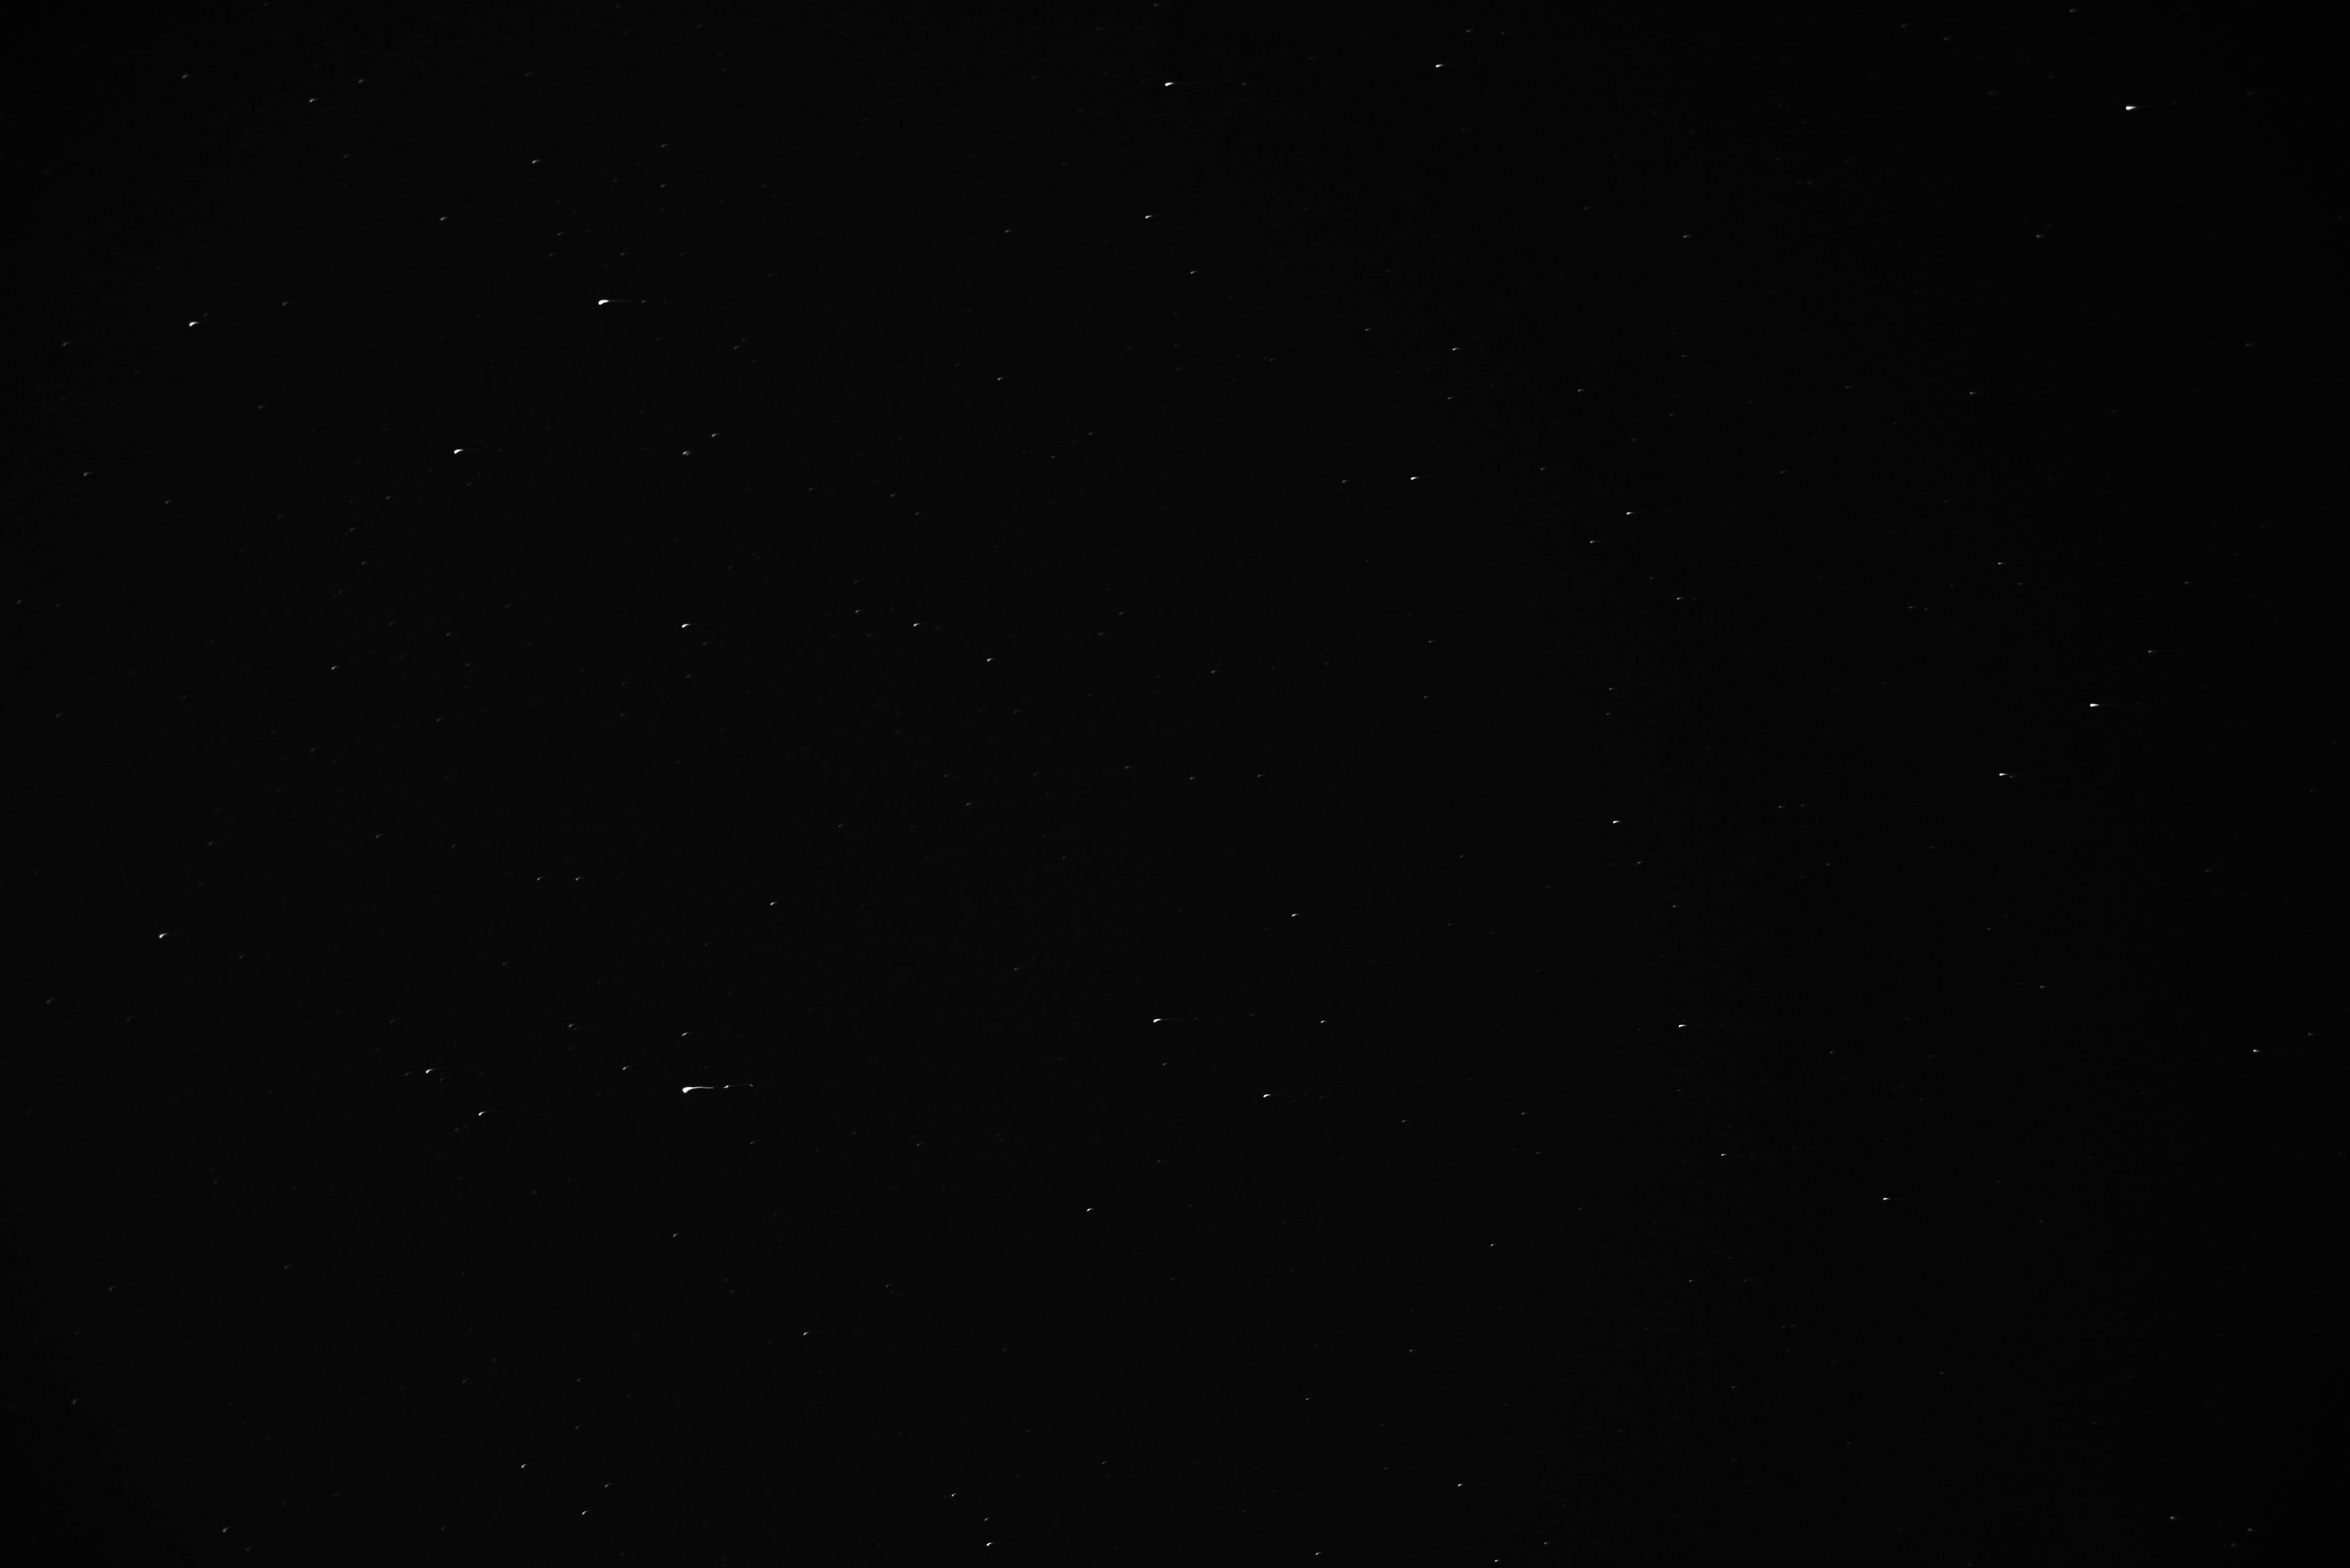 Free stock photo of black-and-white, dark, shooting stars